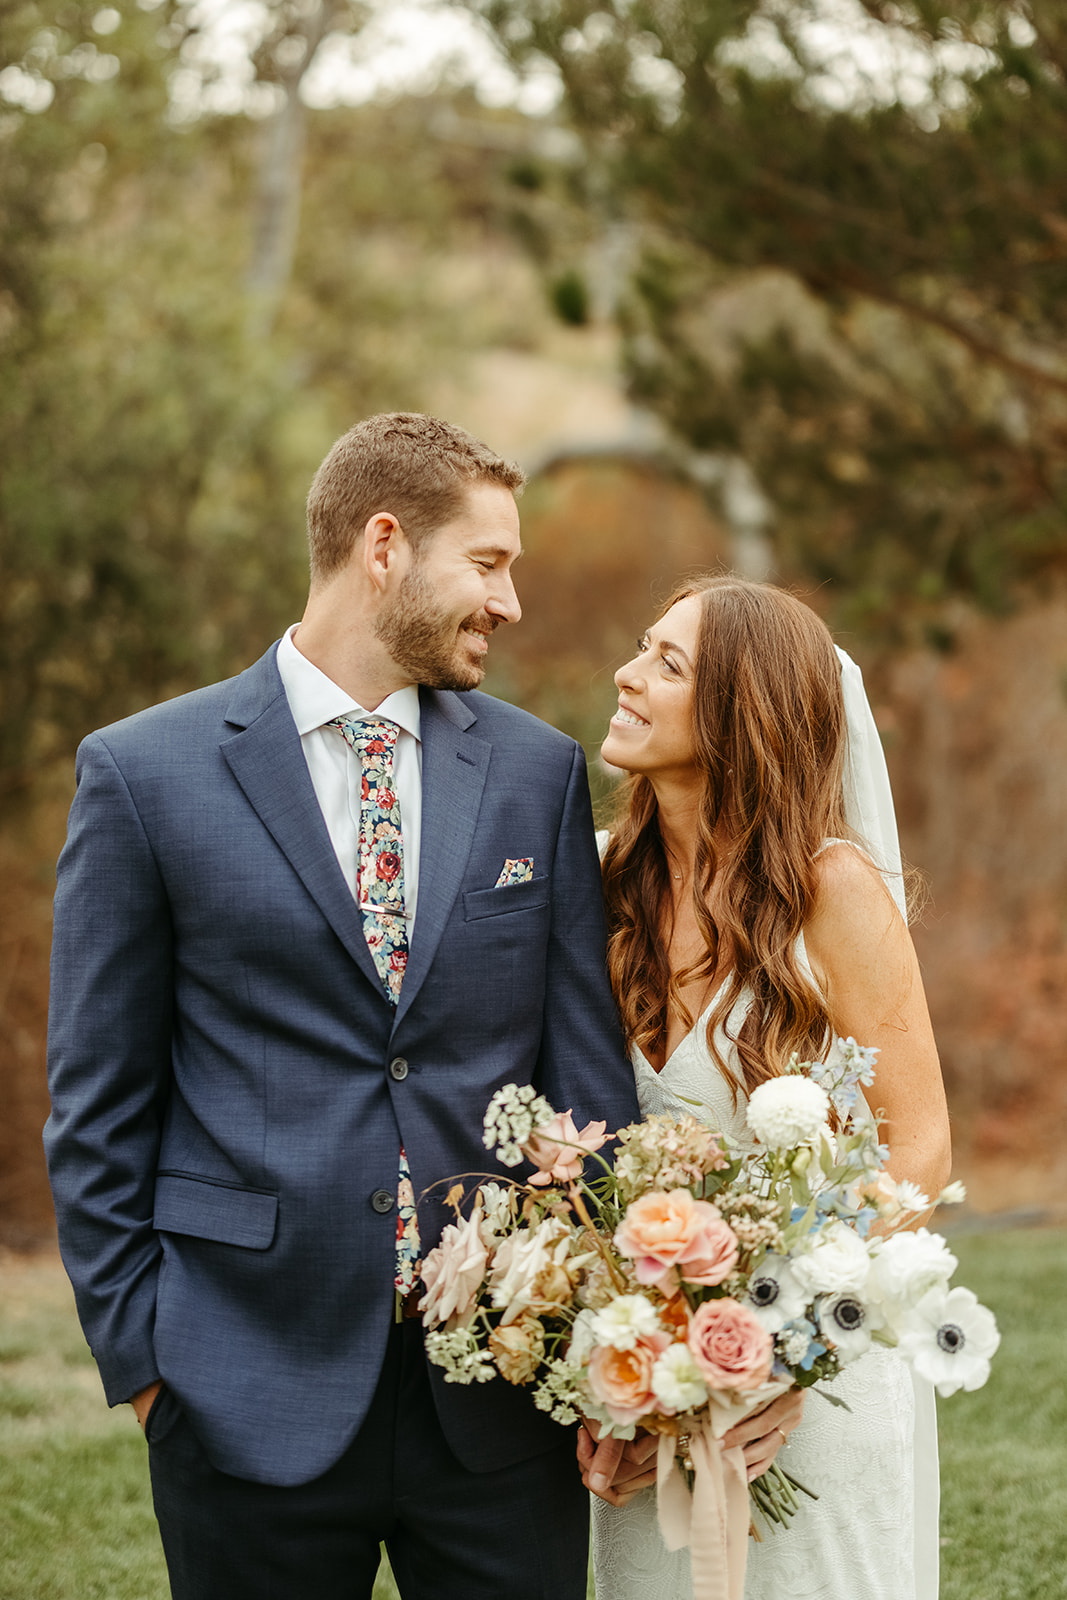 bride, groom, bouquet, flowers, kiss, dress, hair, suit